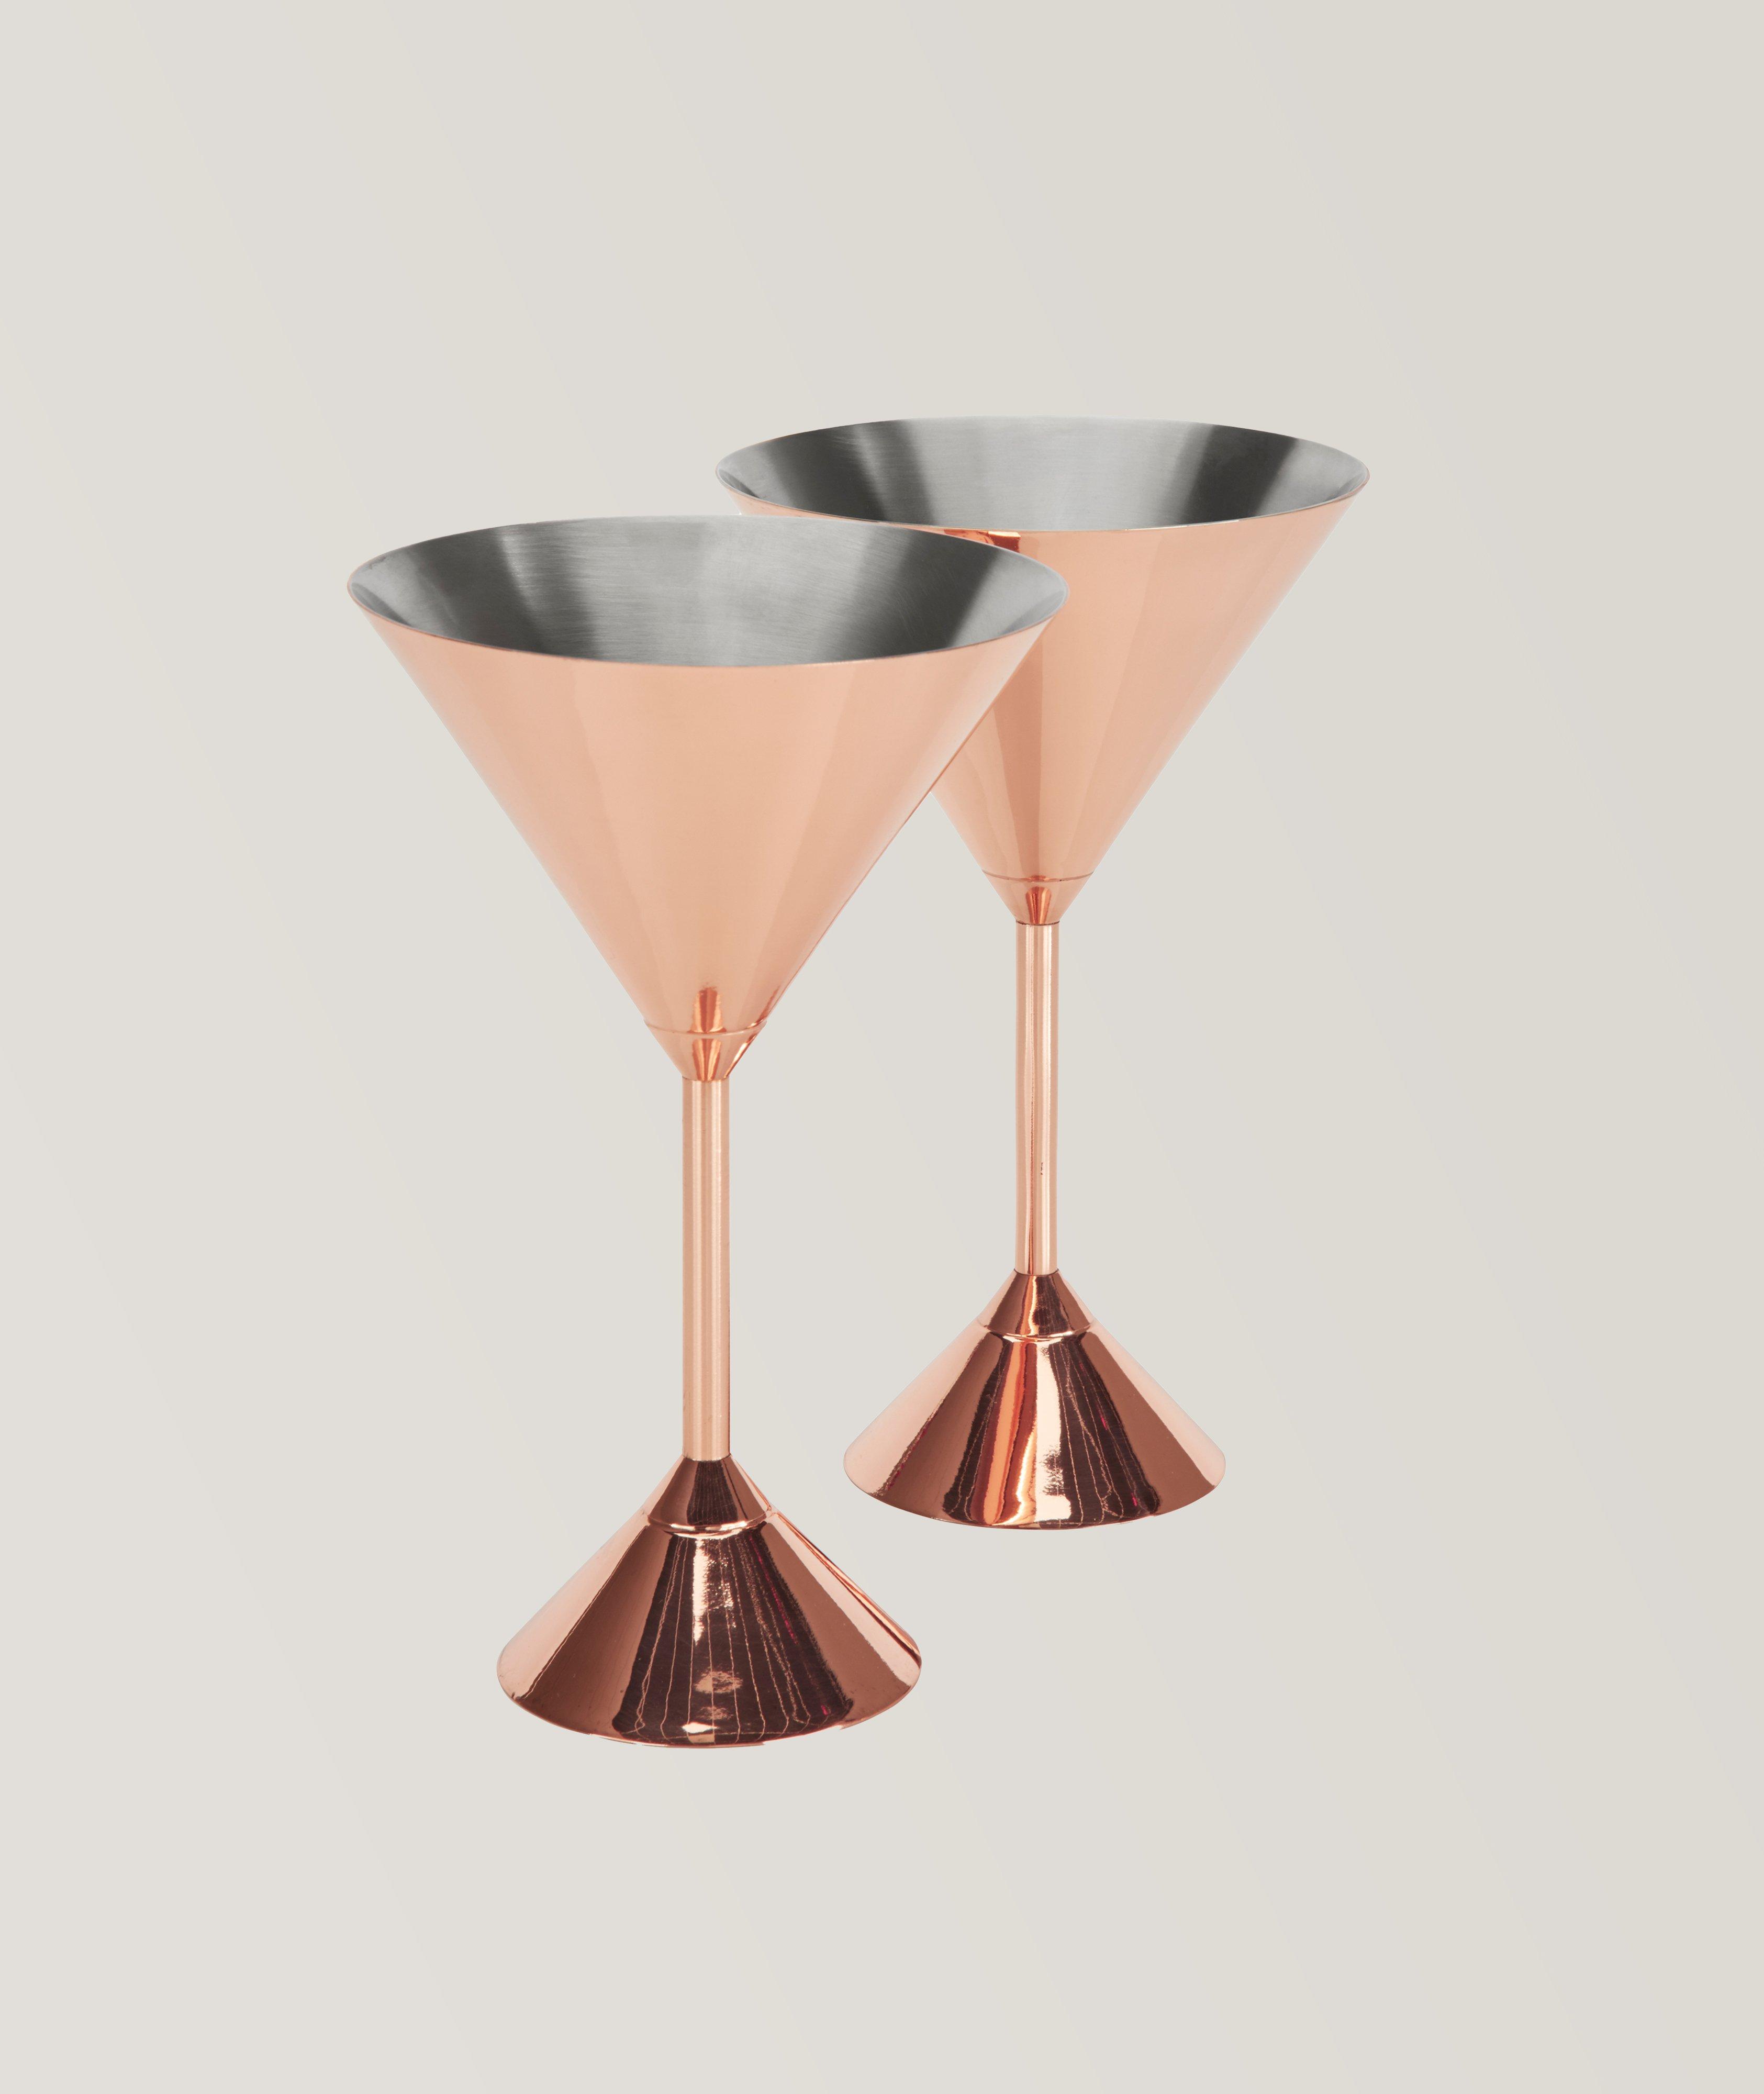 Ensemble de deux verres à martini, collection Plum image 0